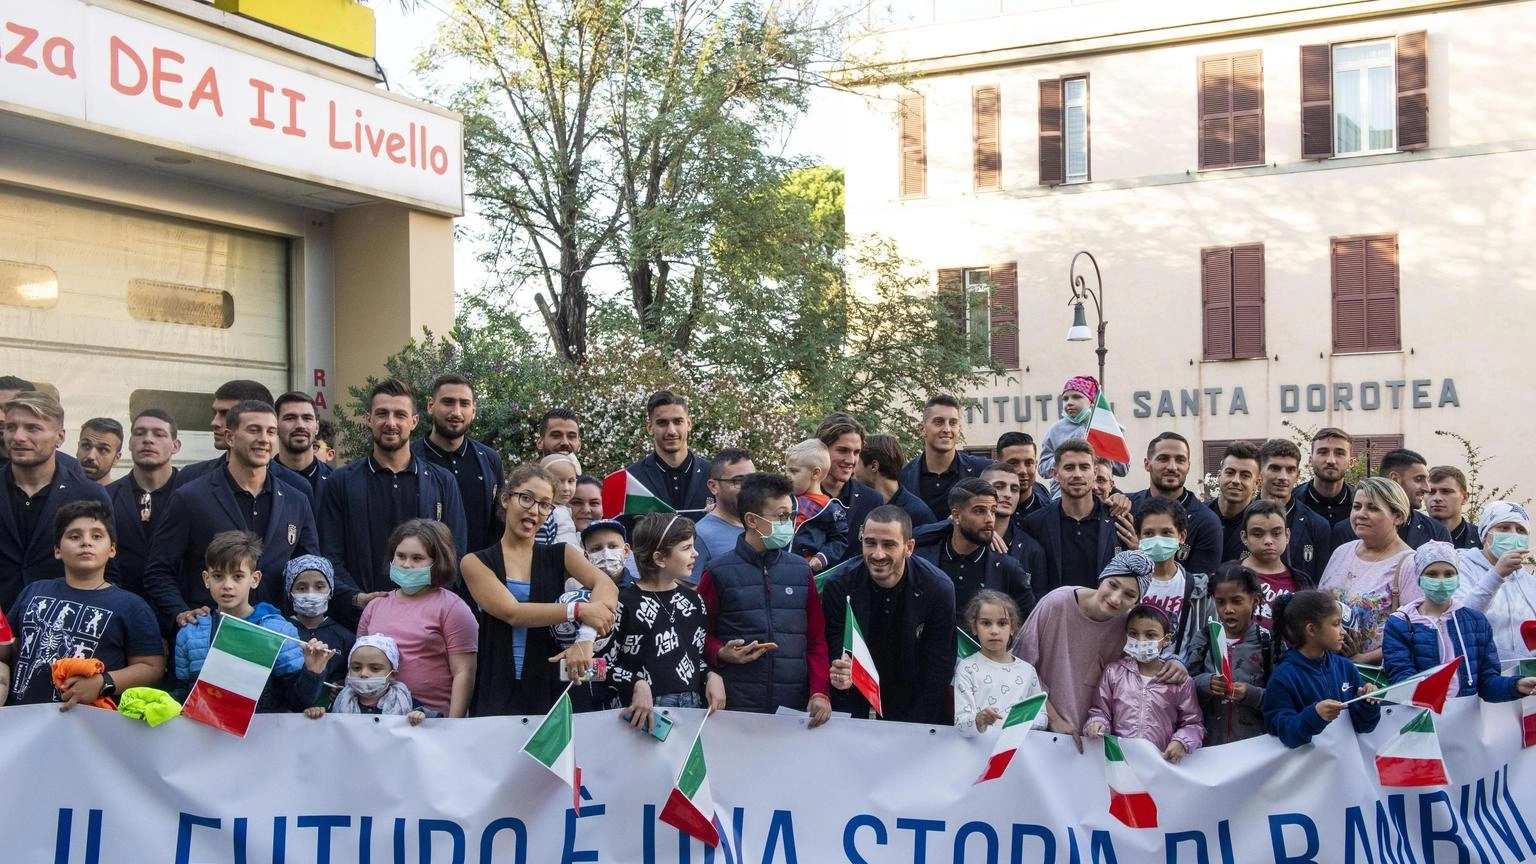 Accordo Italia-S.Sede su Bambino Gesù, sarà nell'area Forlanini